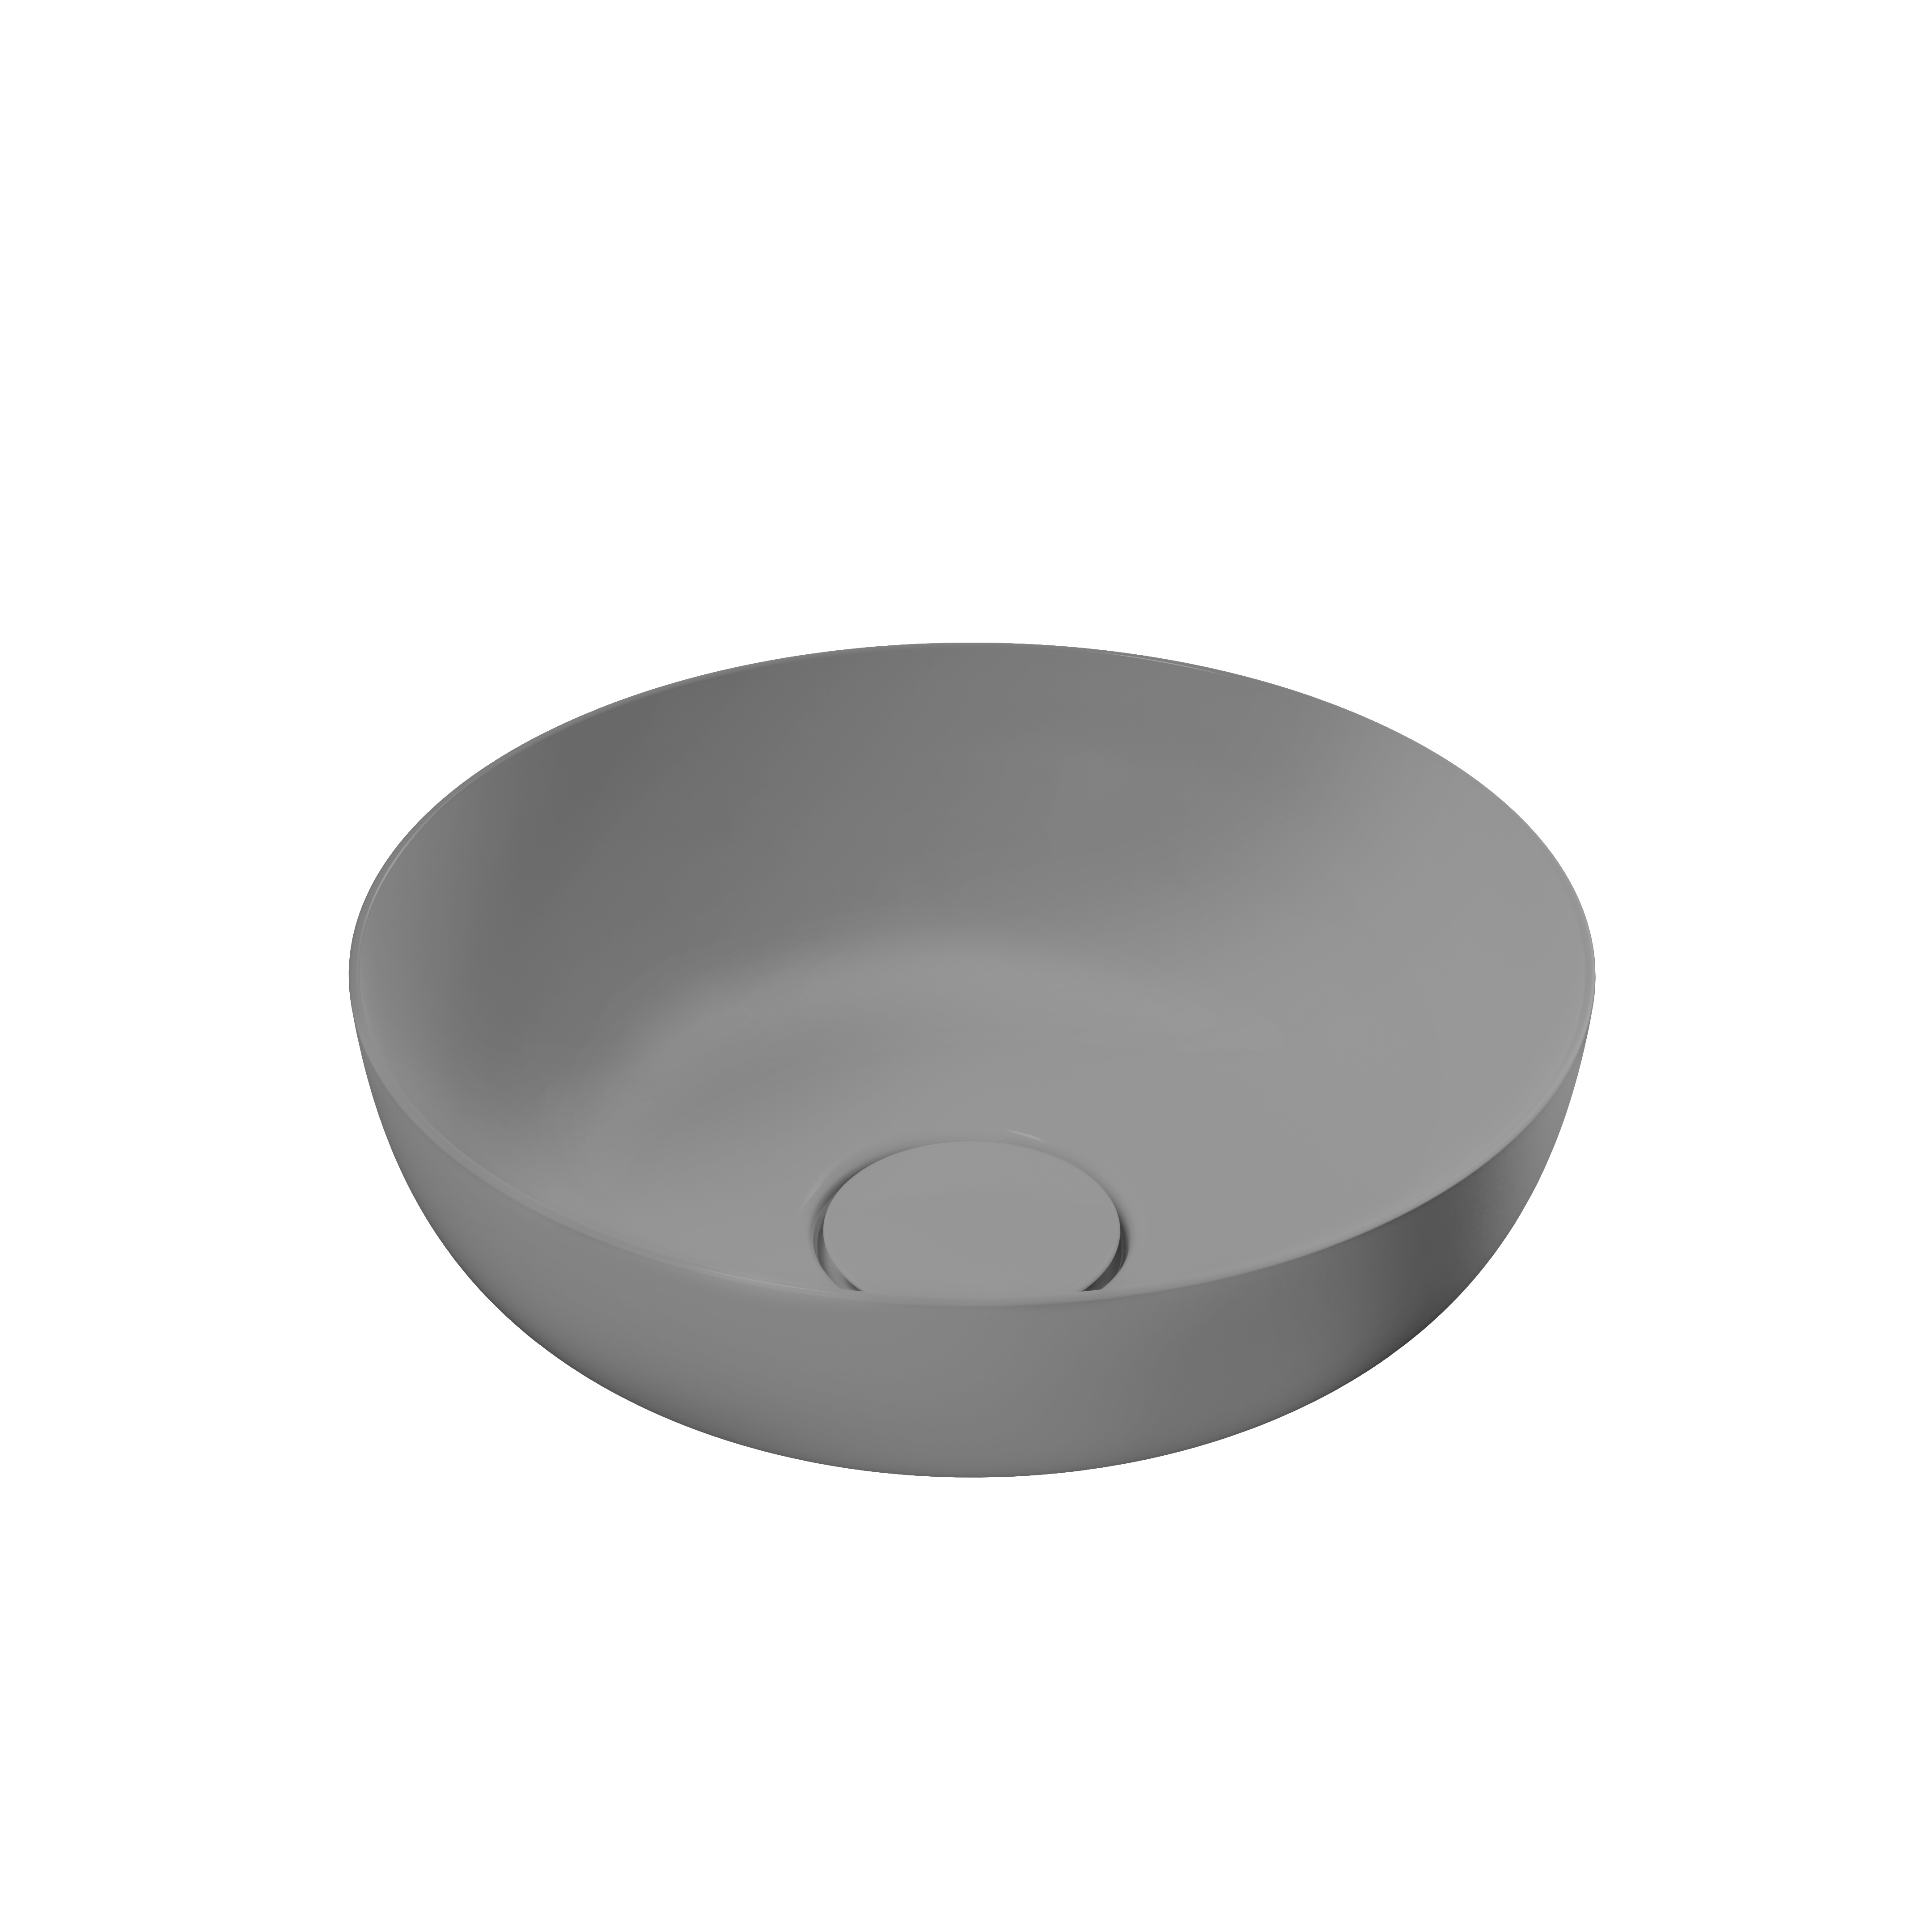 Waschtischschale „Miena“ ⌀ 31 cm in cool grey 30, mit Perl-Effekt